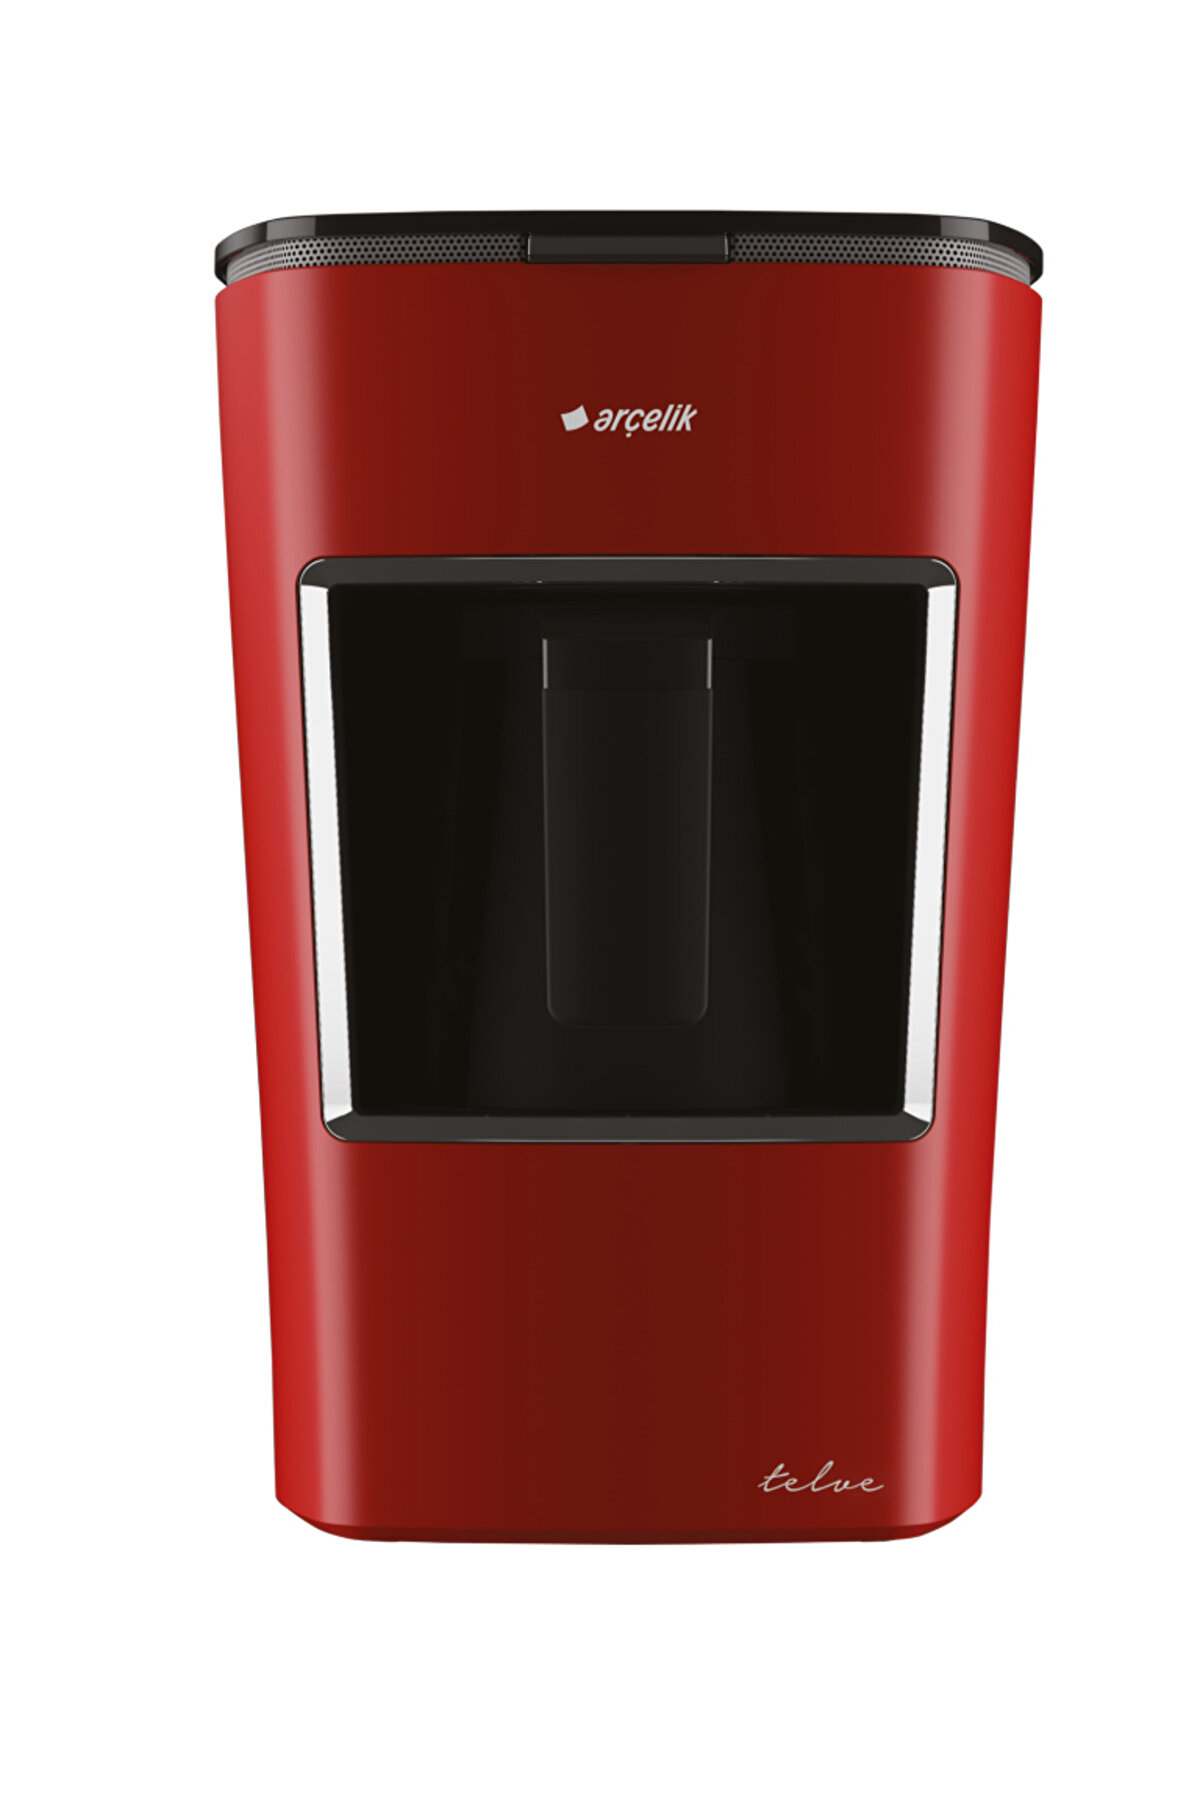 Arçelik Telve K3300 670 W Fincan 3 Kapasiteli Kahve Makinesi Kırmızı